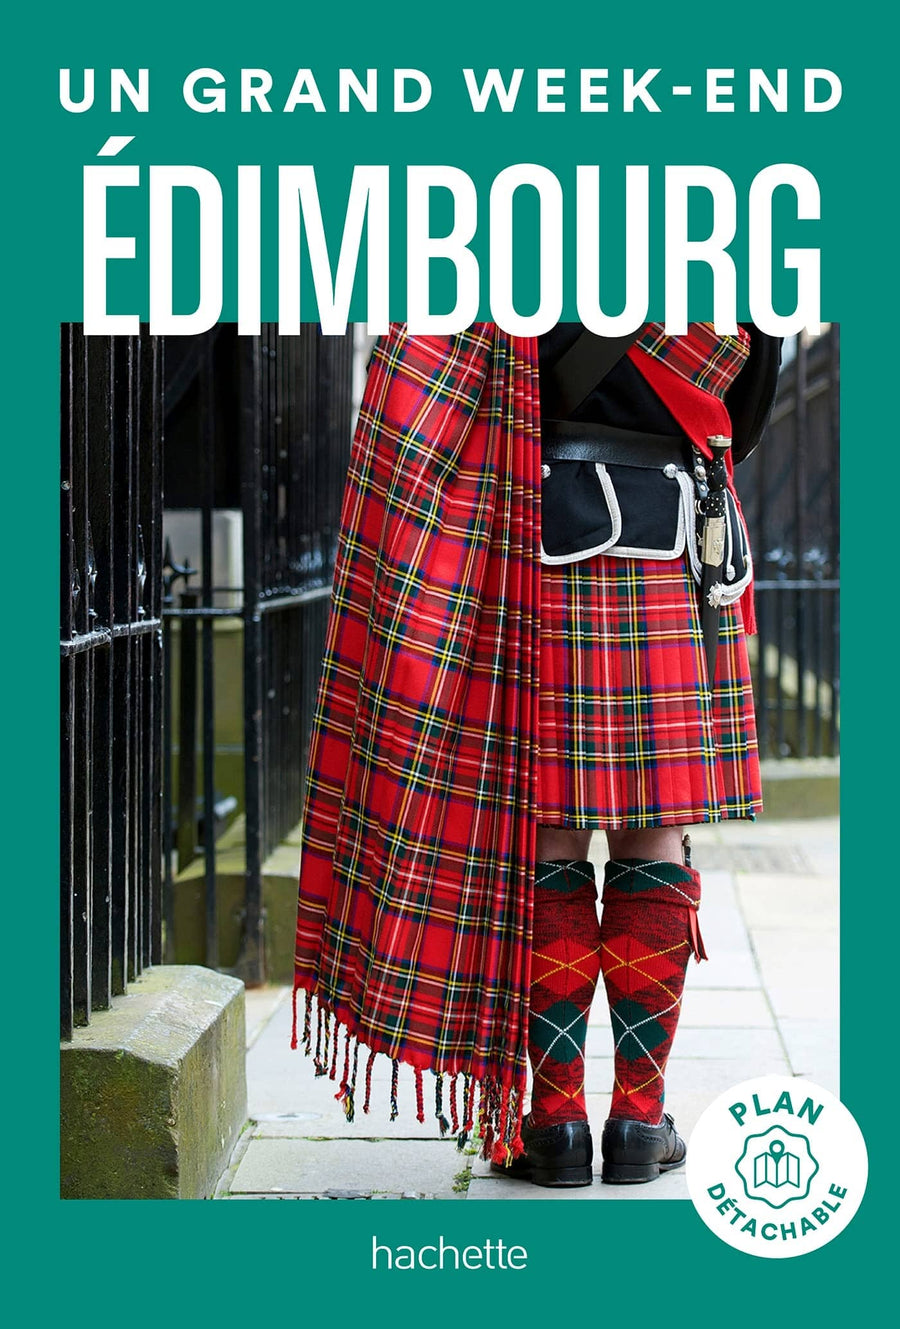 Guide de voyage de poche - Un Grand Week-end à Edimbourg - Édition 2023 | Hachette guide petit format Hachette 